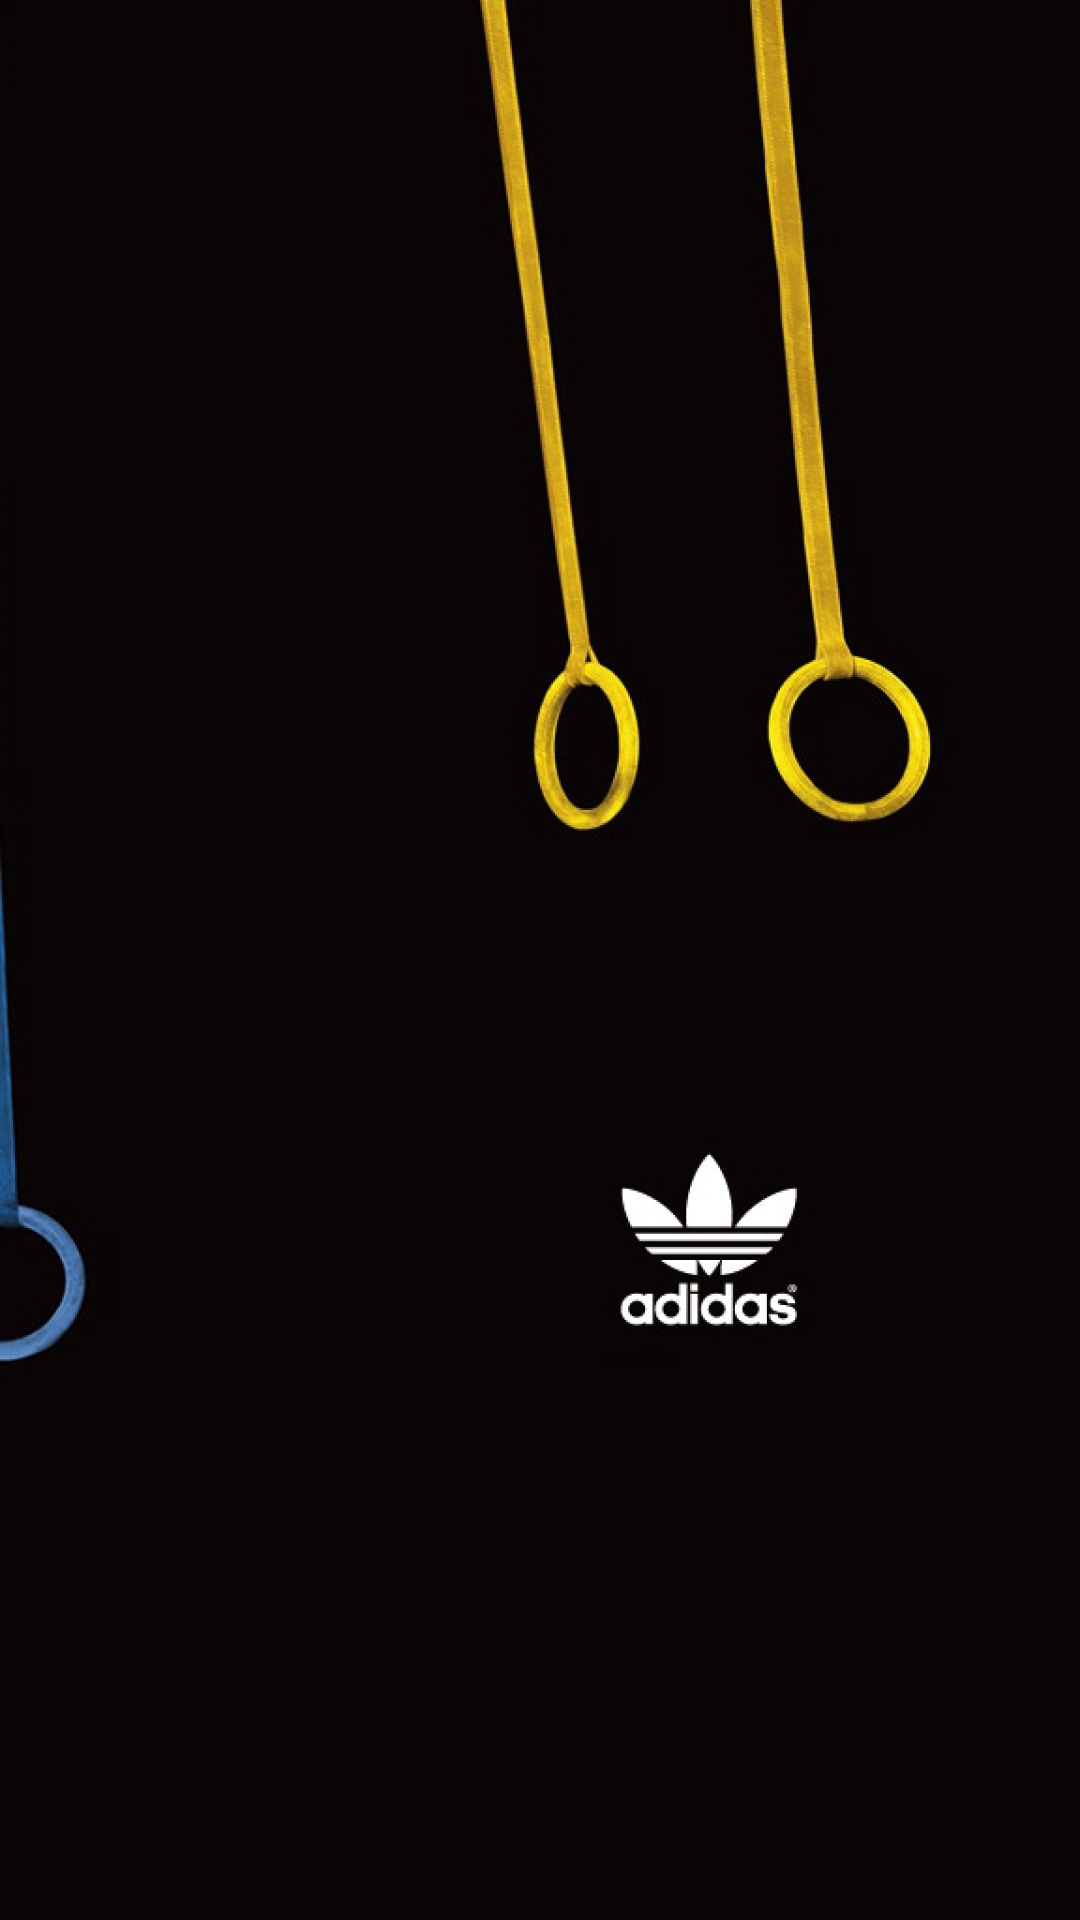 Adidas Originals 961 Hd Wallpaper Backgrounds Download